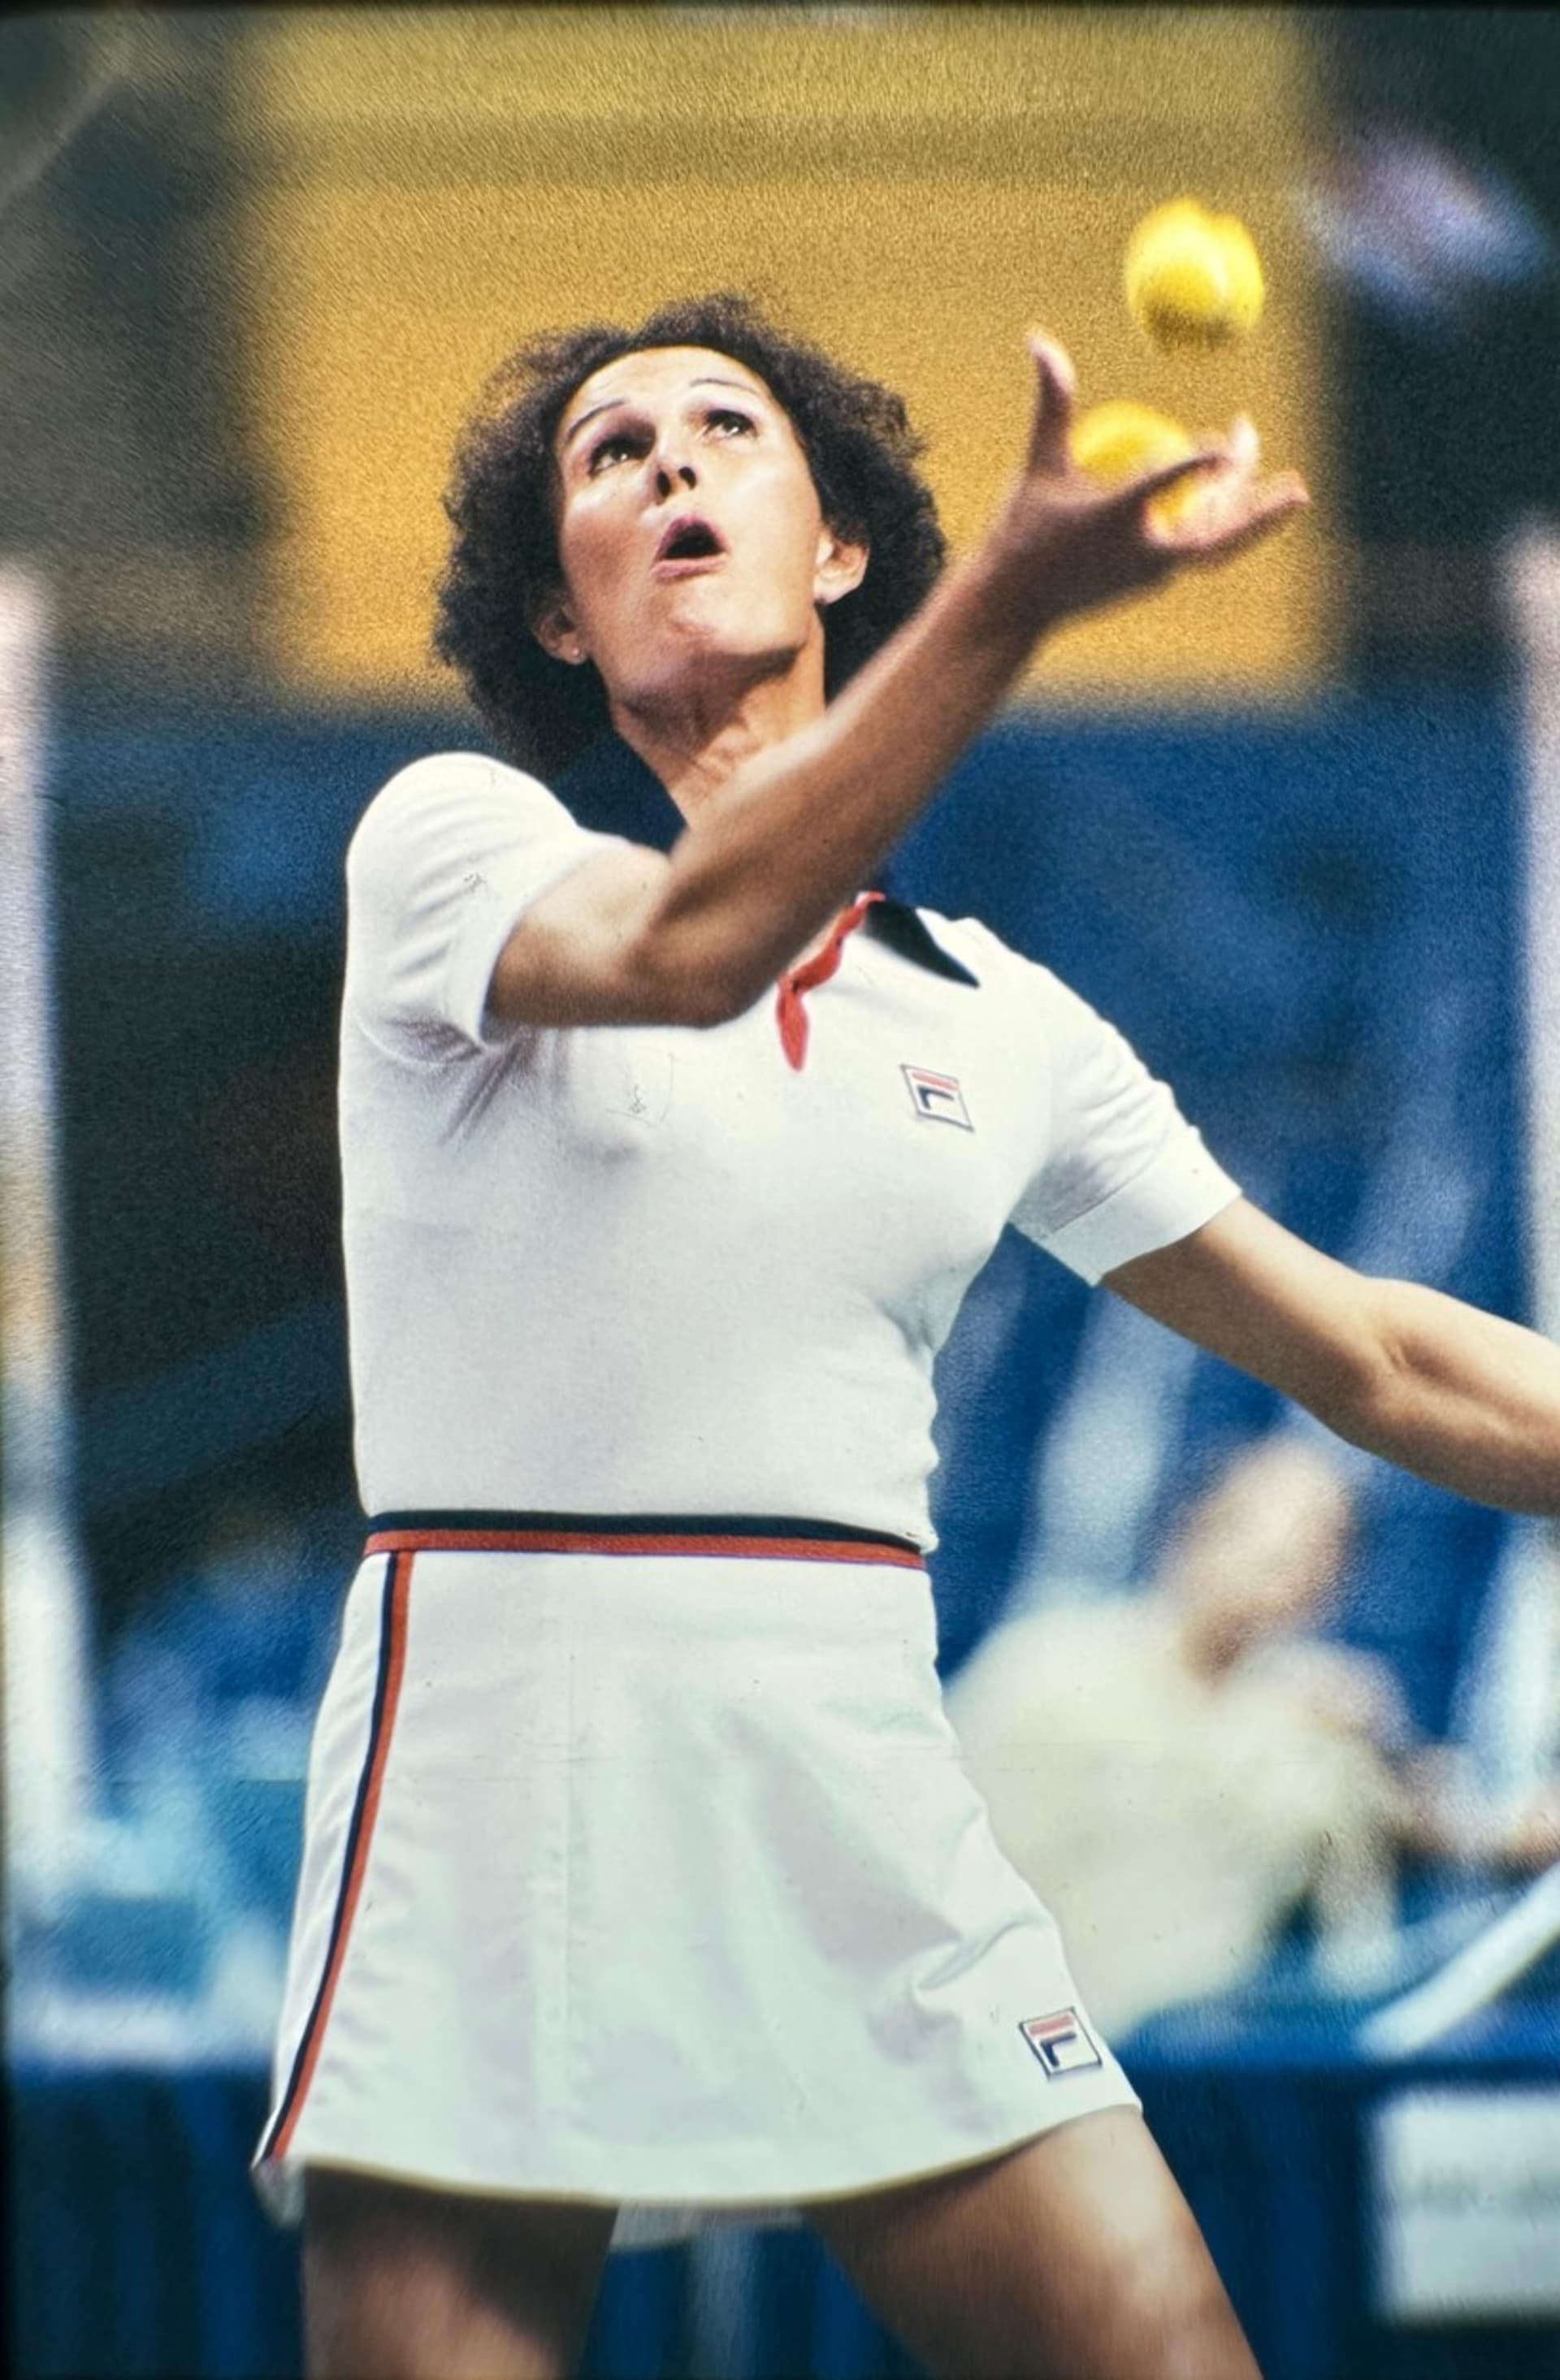 Průkopnicí mezi transgender sportovci byla tenistka Renée Richardsová, která začala hrát proti ženám v roce 1976.